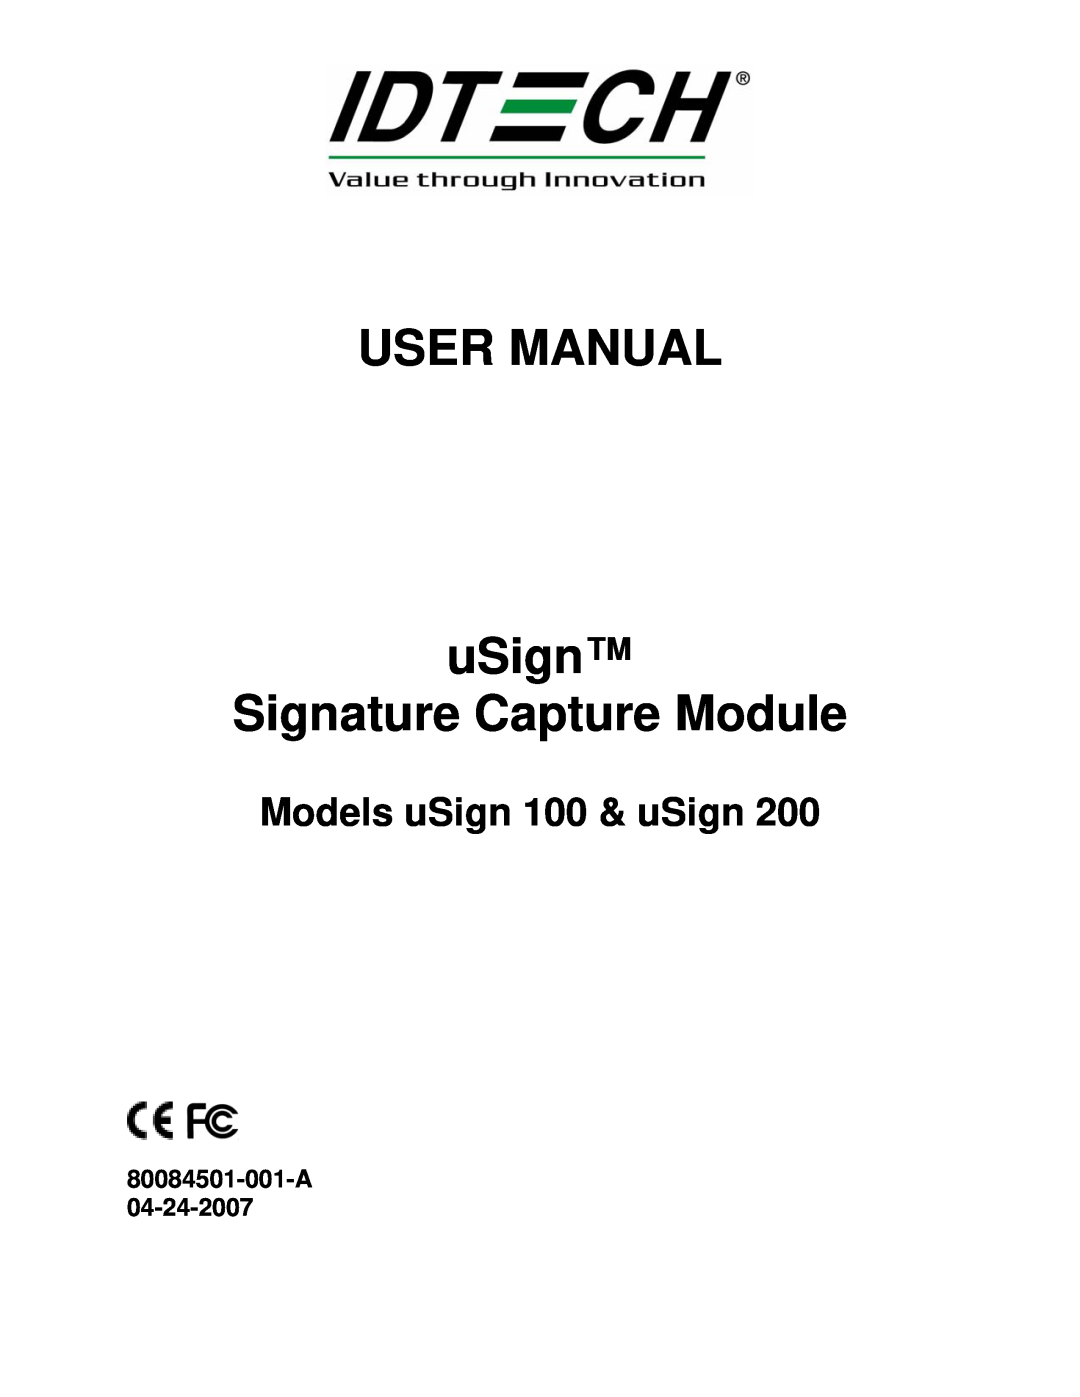 Compaq uSign 100, uSign 200 user manual 80084501-001-A 04-24-2007, USER MANUAL uSign Signature Capture Module 